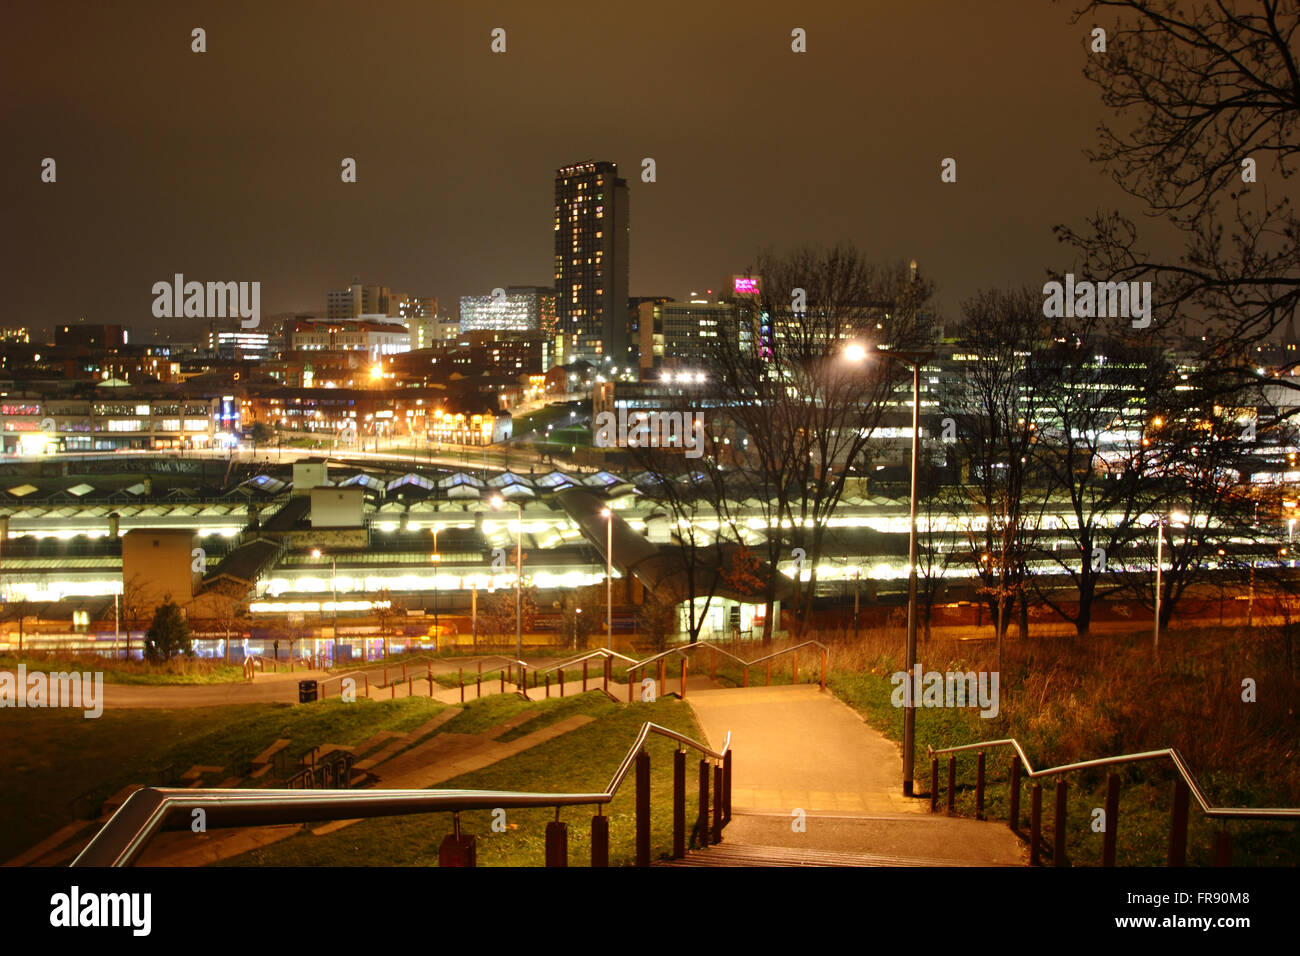 Die Skyline von Sheffield Stadtzentrum von South Street Park, Sheffield, South Yorkshire, England UK EU gesehen Stockfoto